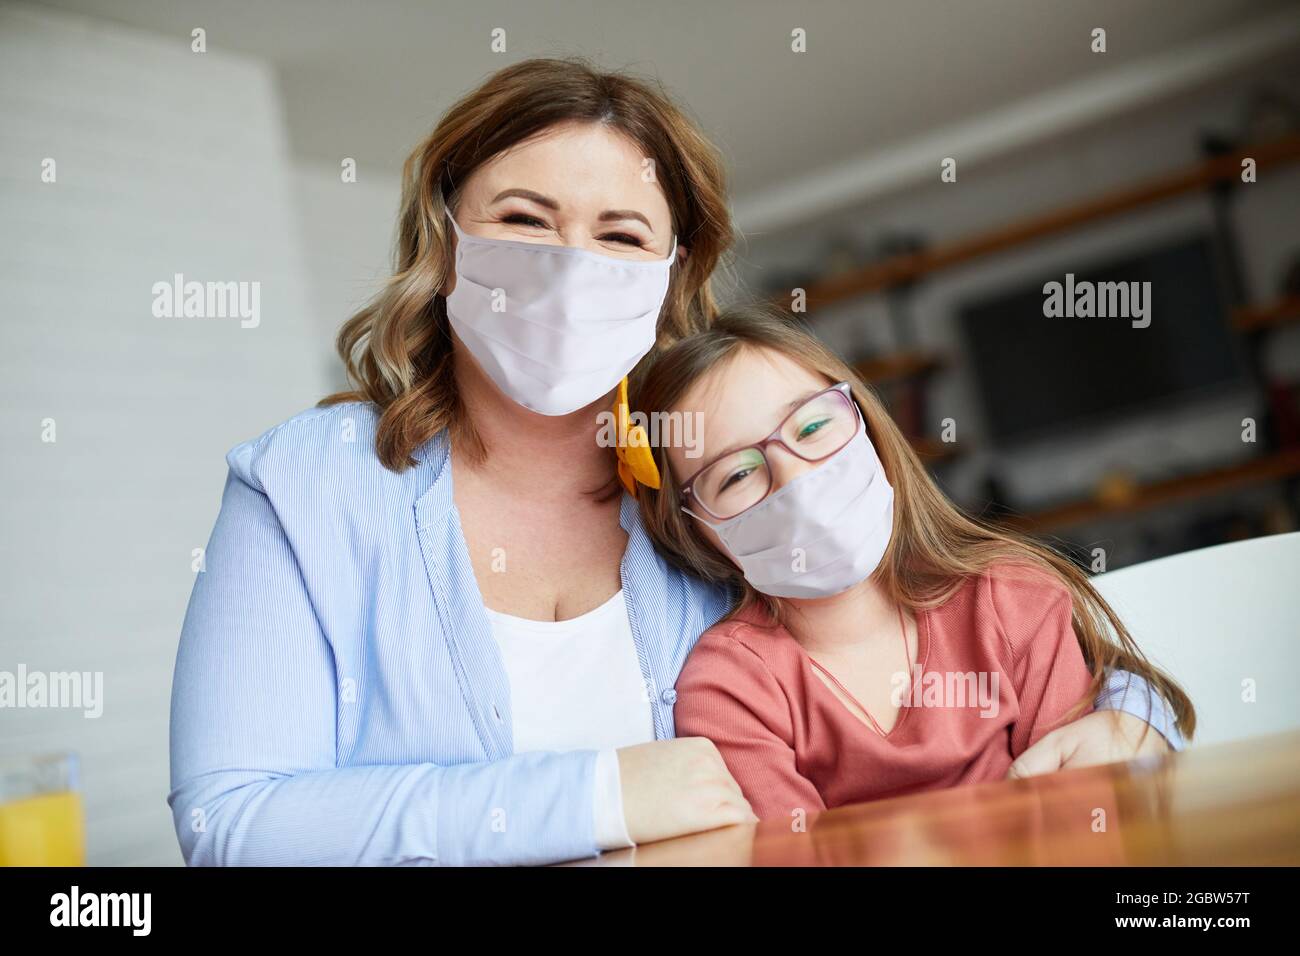 enfant fille mère famille heureux liant enfant enfant enfant enfant ensemble fille virus masque de protection corona Banque D'Images